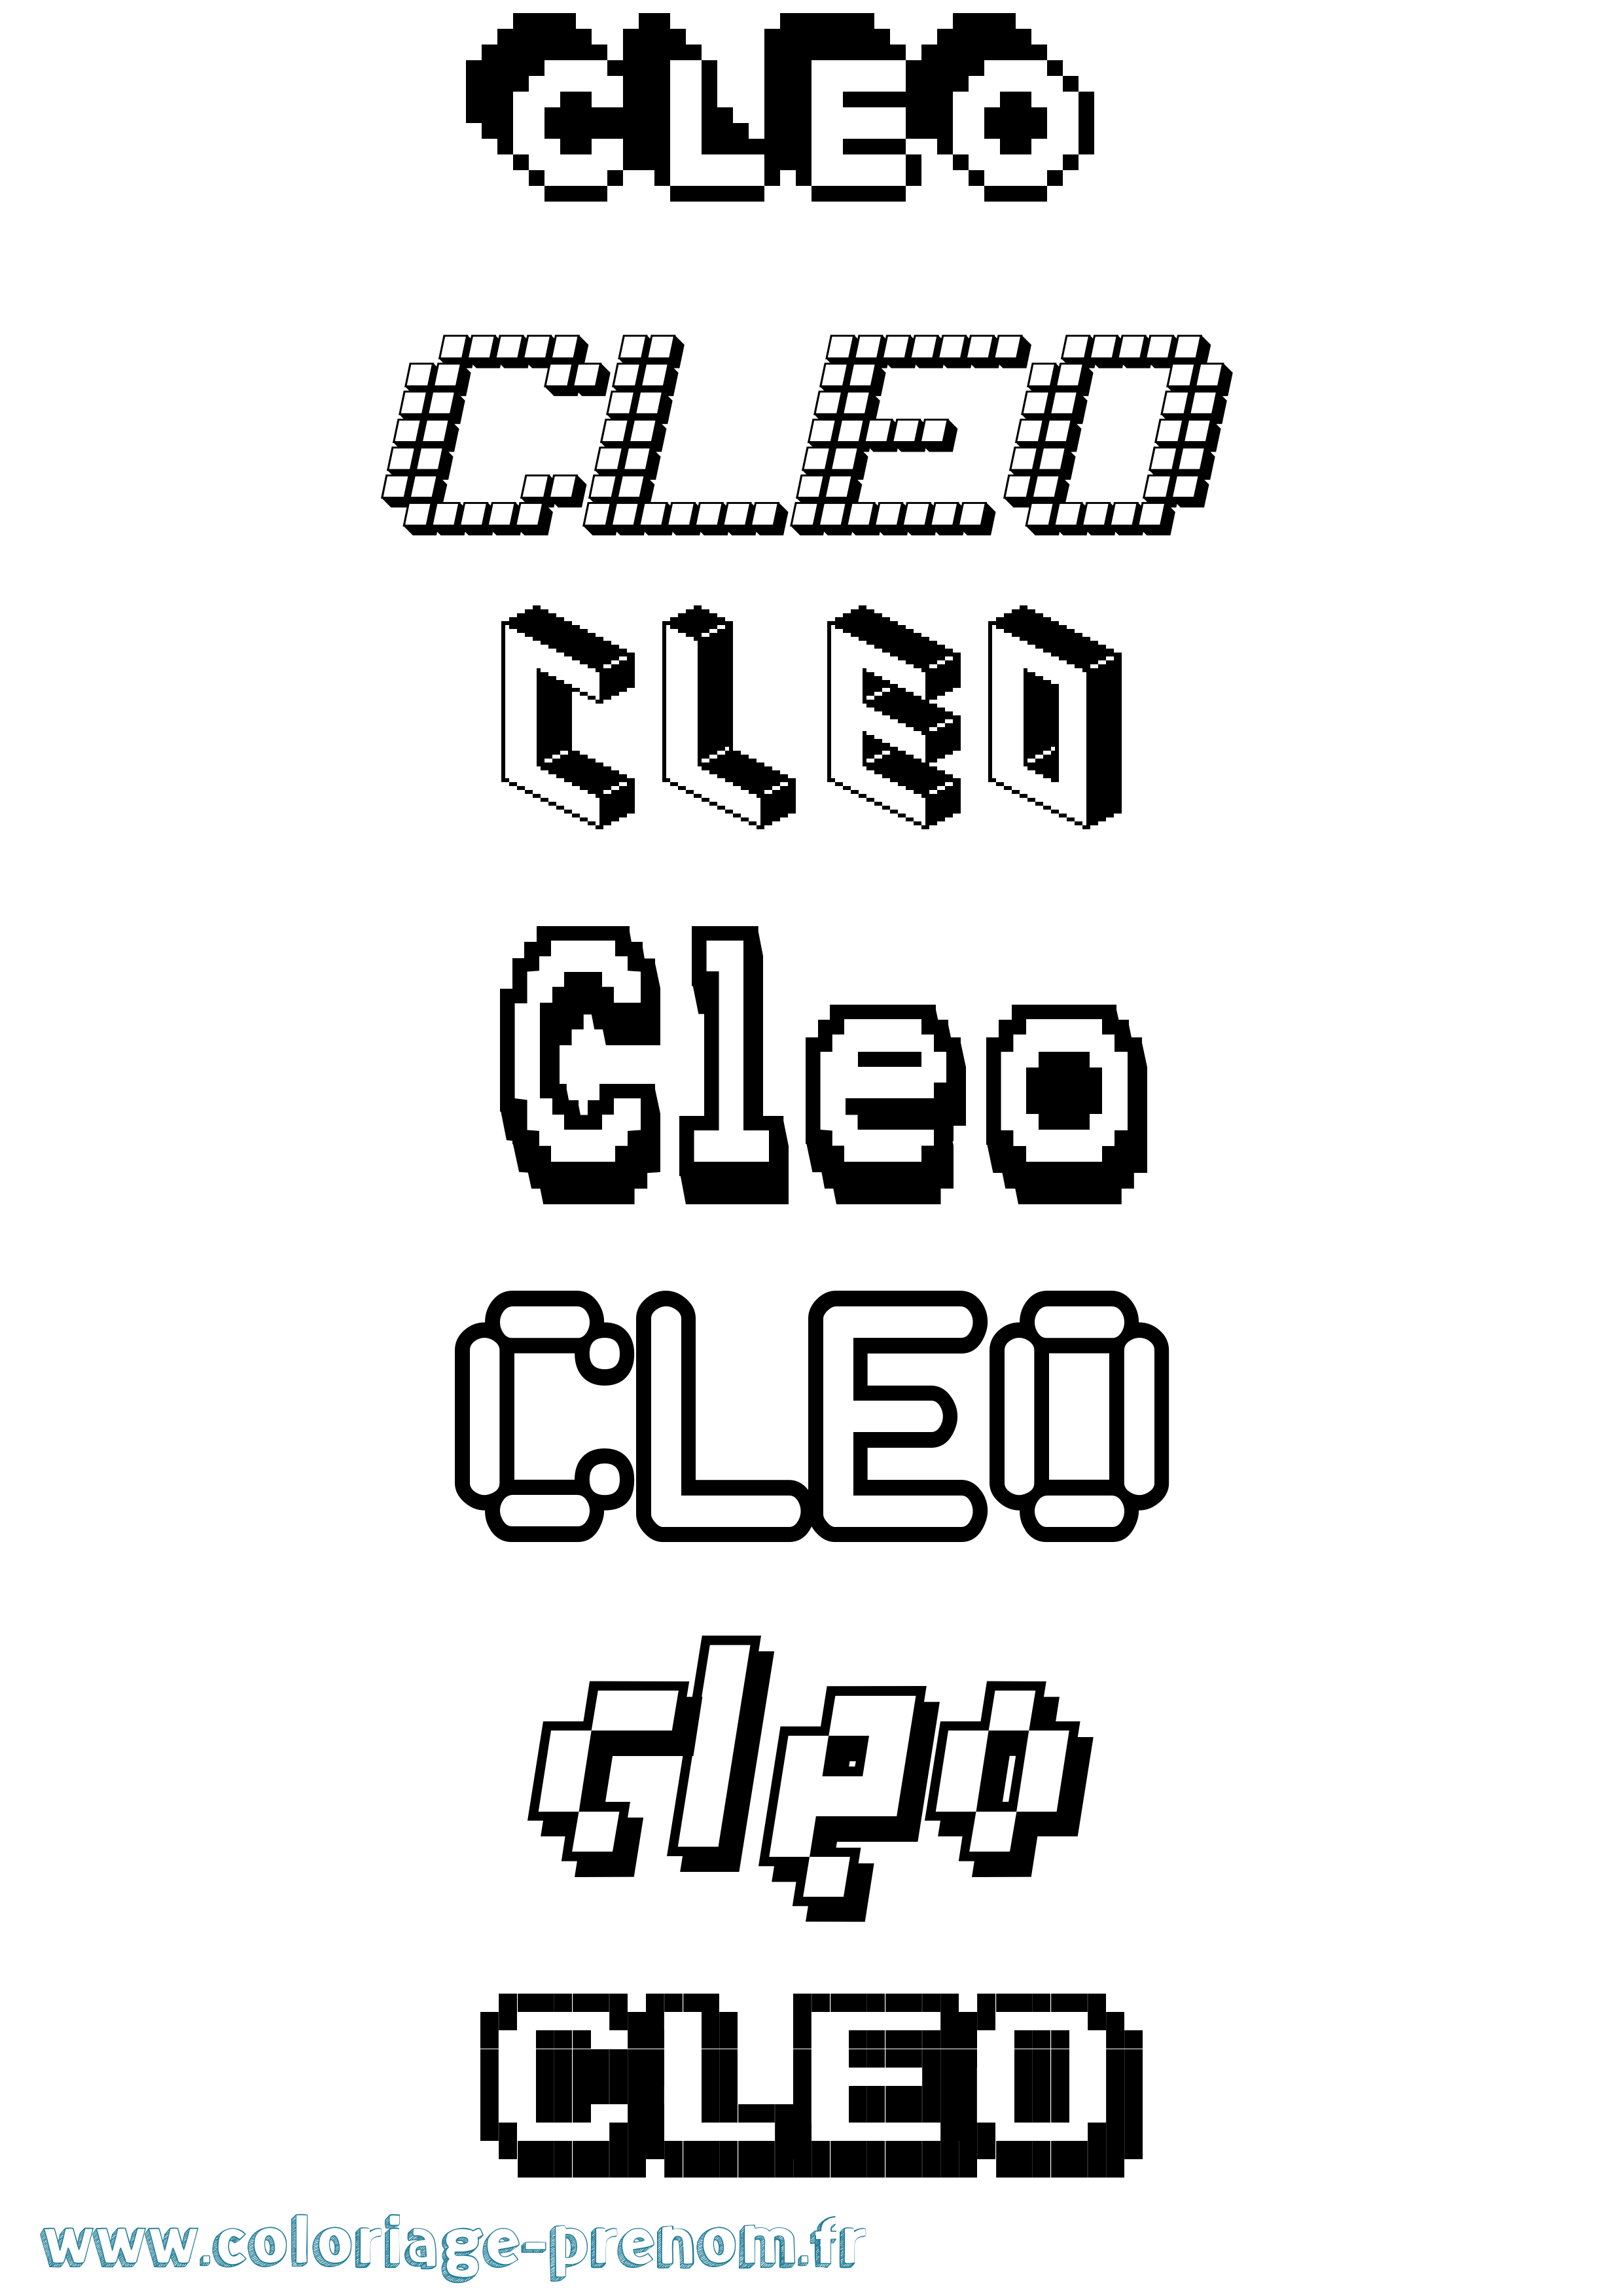 Coloriage prénom Cleo